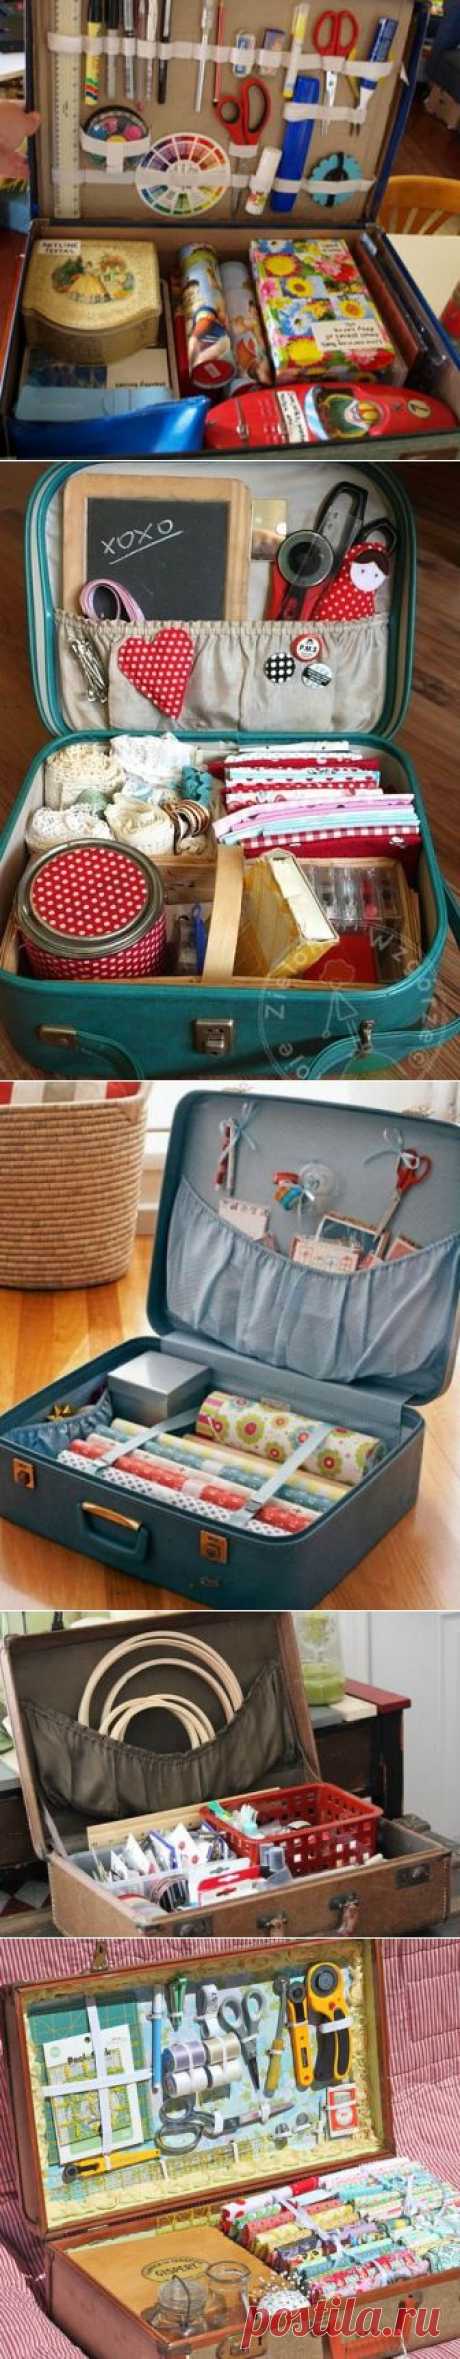 Рукодельный чемоданчик - Ярмарка Мастеров - ручная работа, handmade